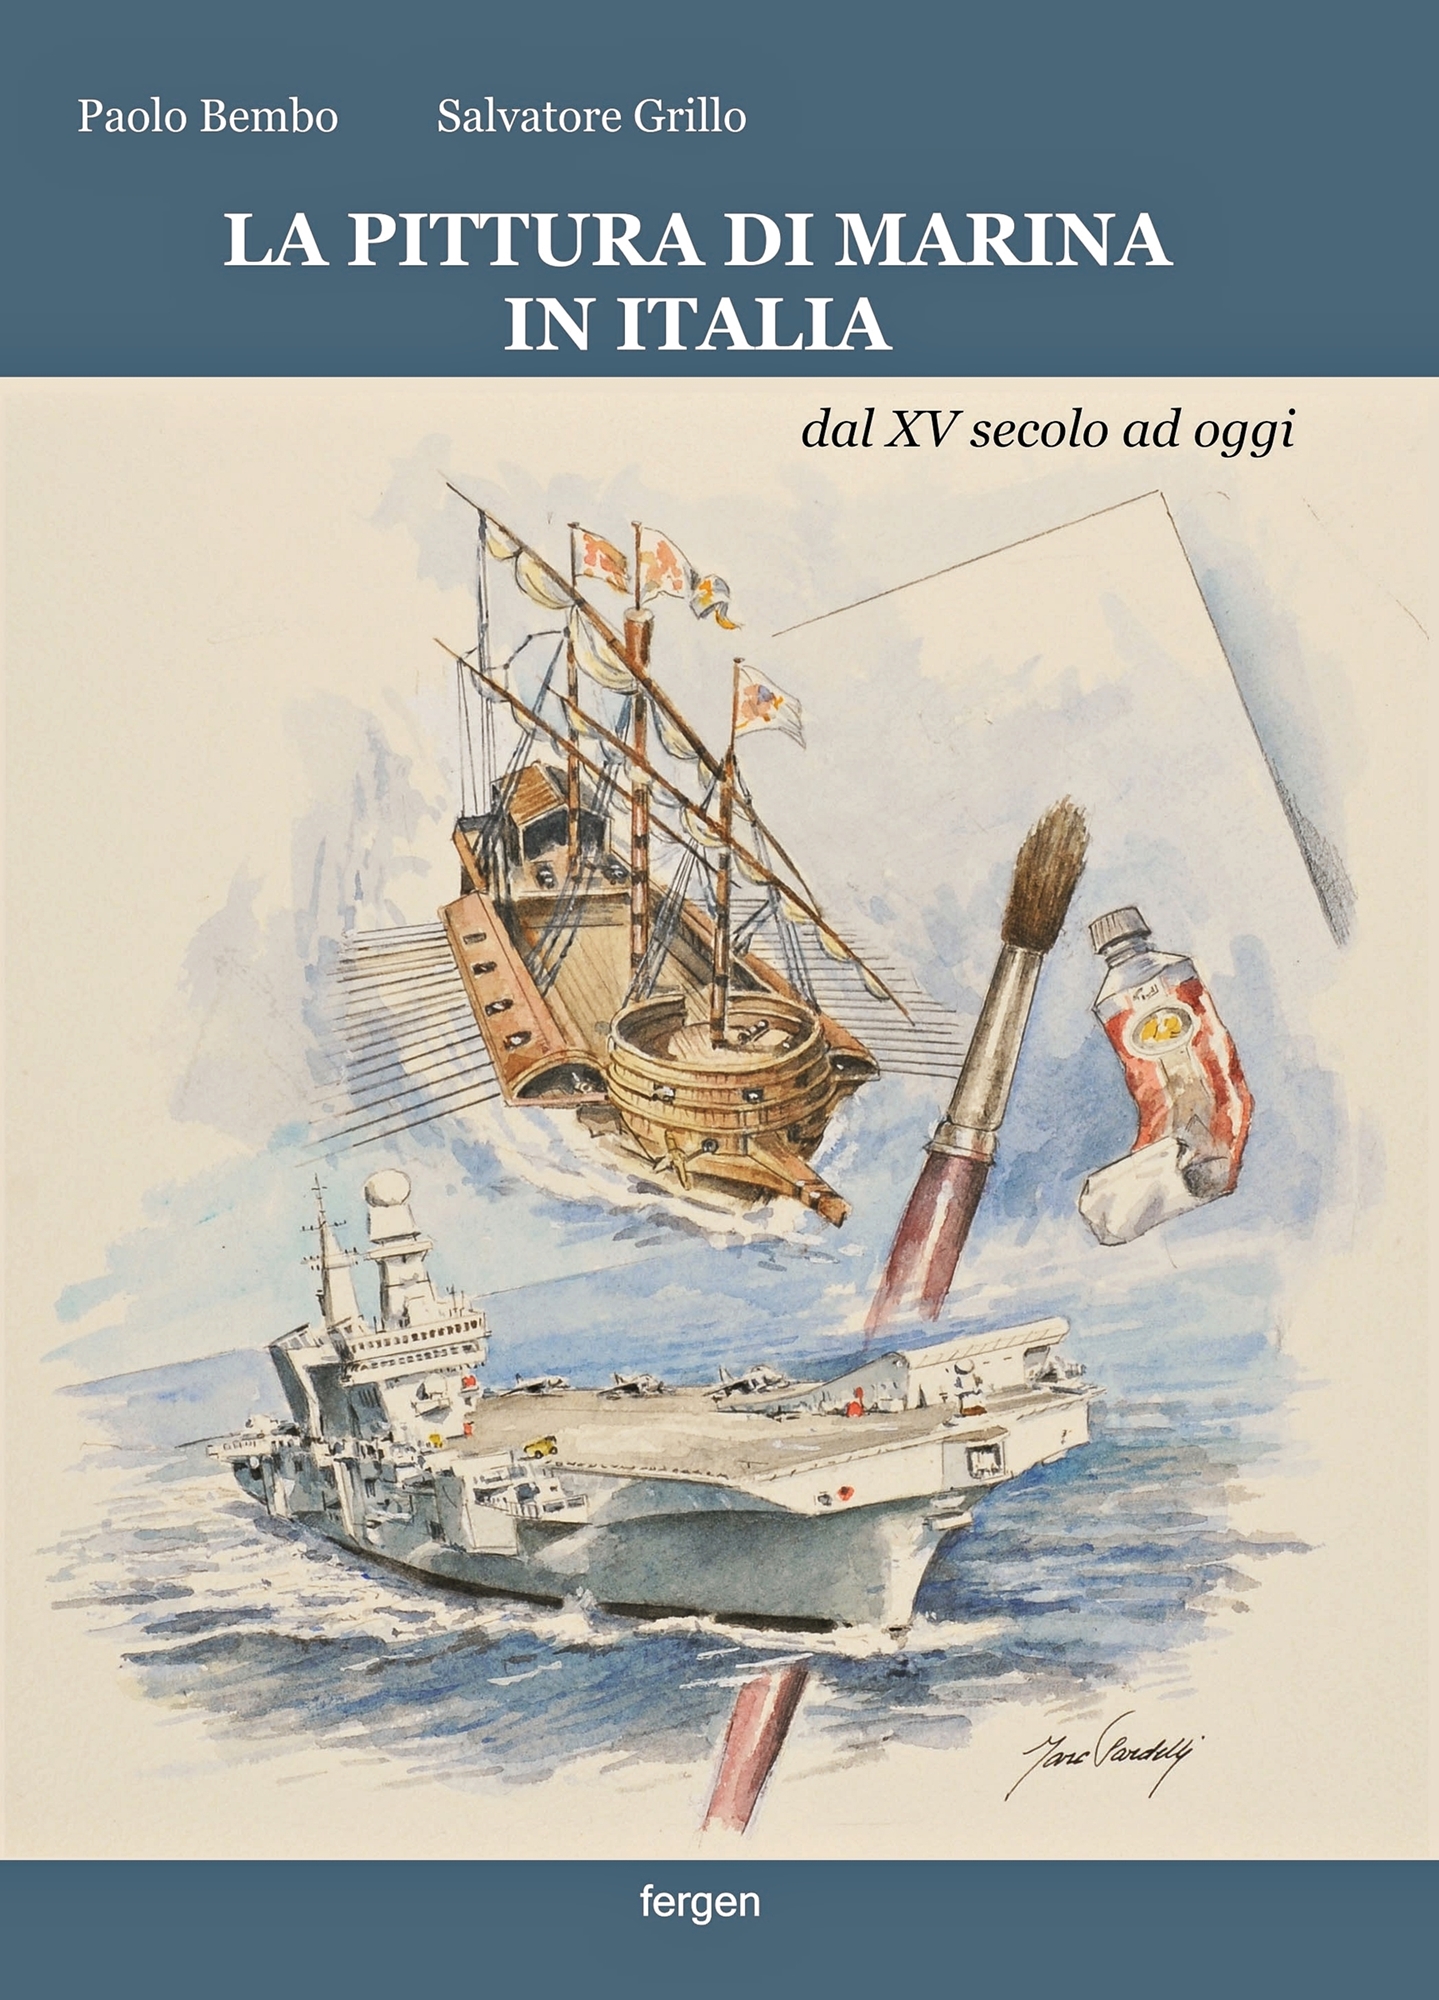 Presentazione del libro “Storia della Pittura di Marina in Italia dal XV secolo ad oggi”: Venerdì 14 Novembre 2014, ore 18.30 – Castello Caetani